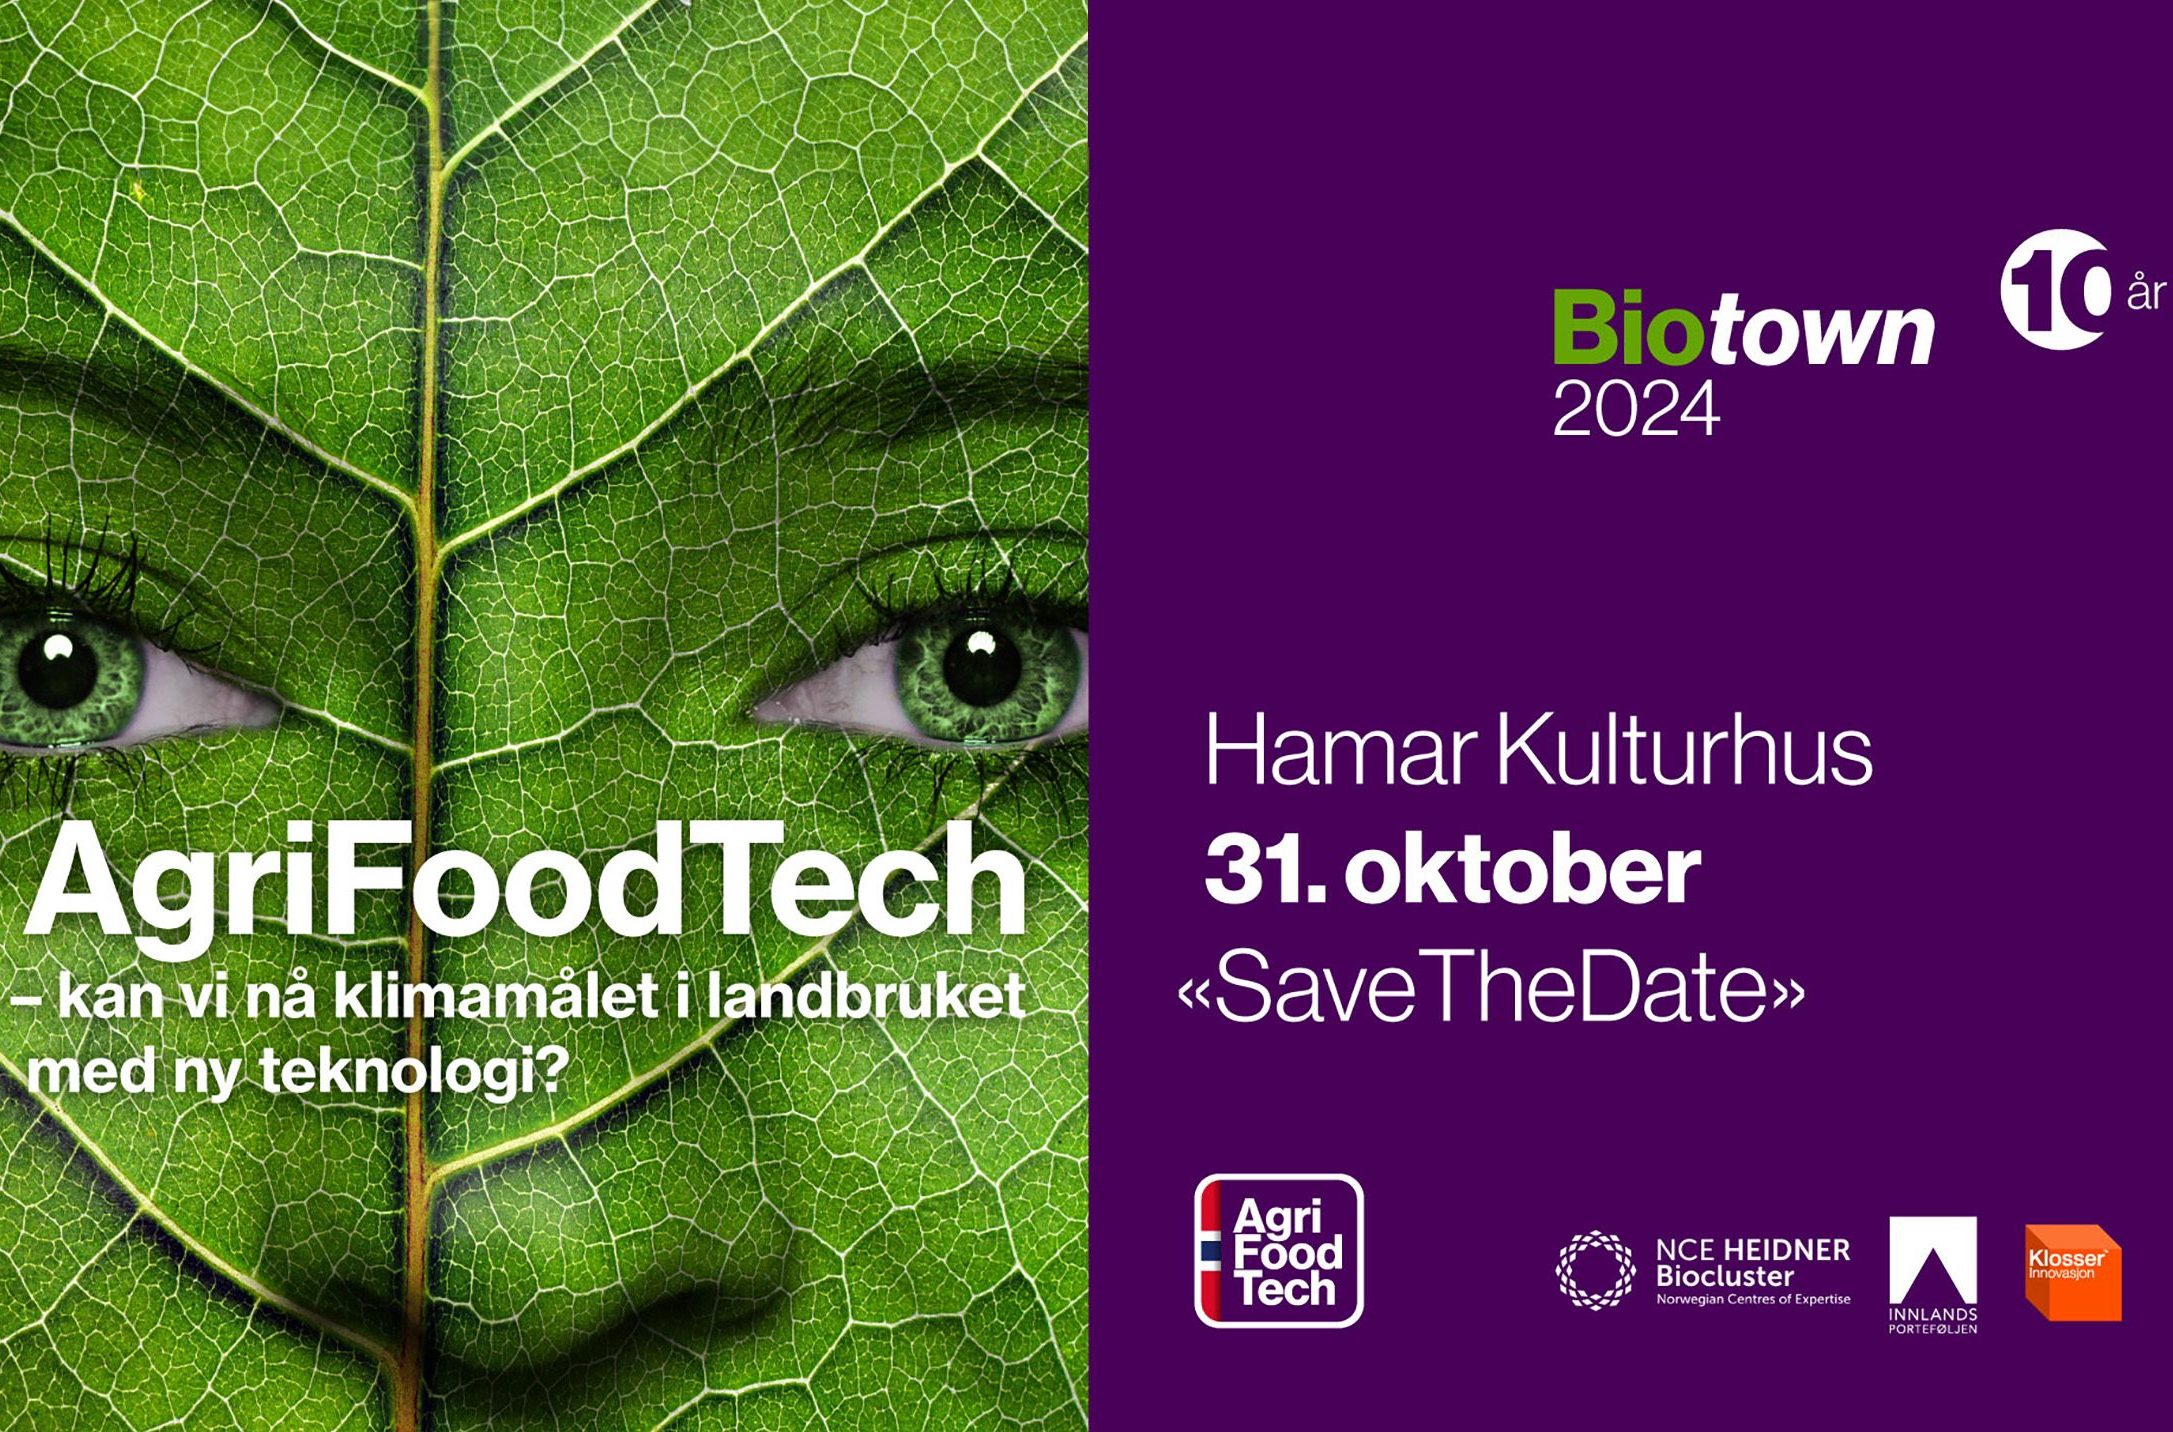 Biotown 2024 – kan vi nå klimamålet i landbruket med ny teknologi?